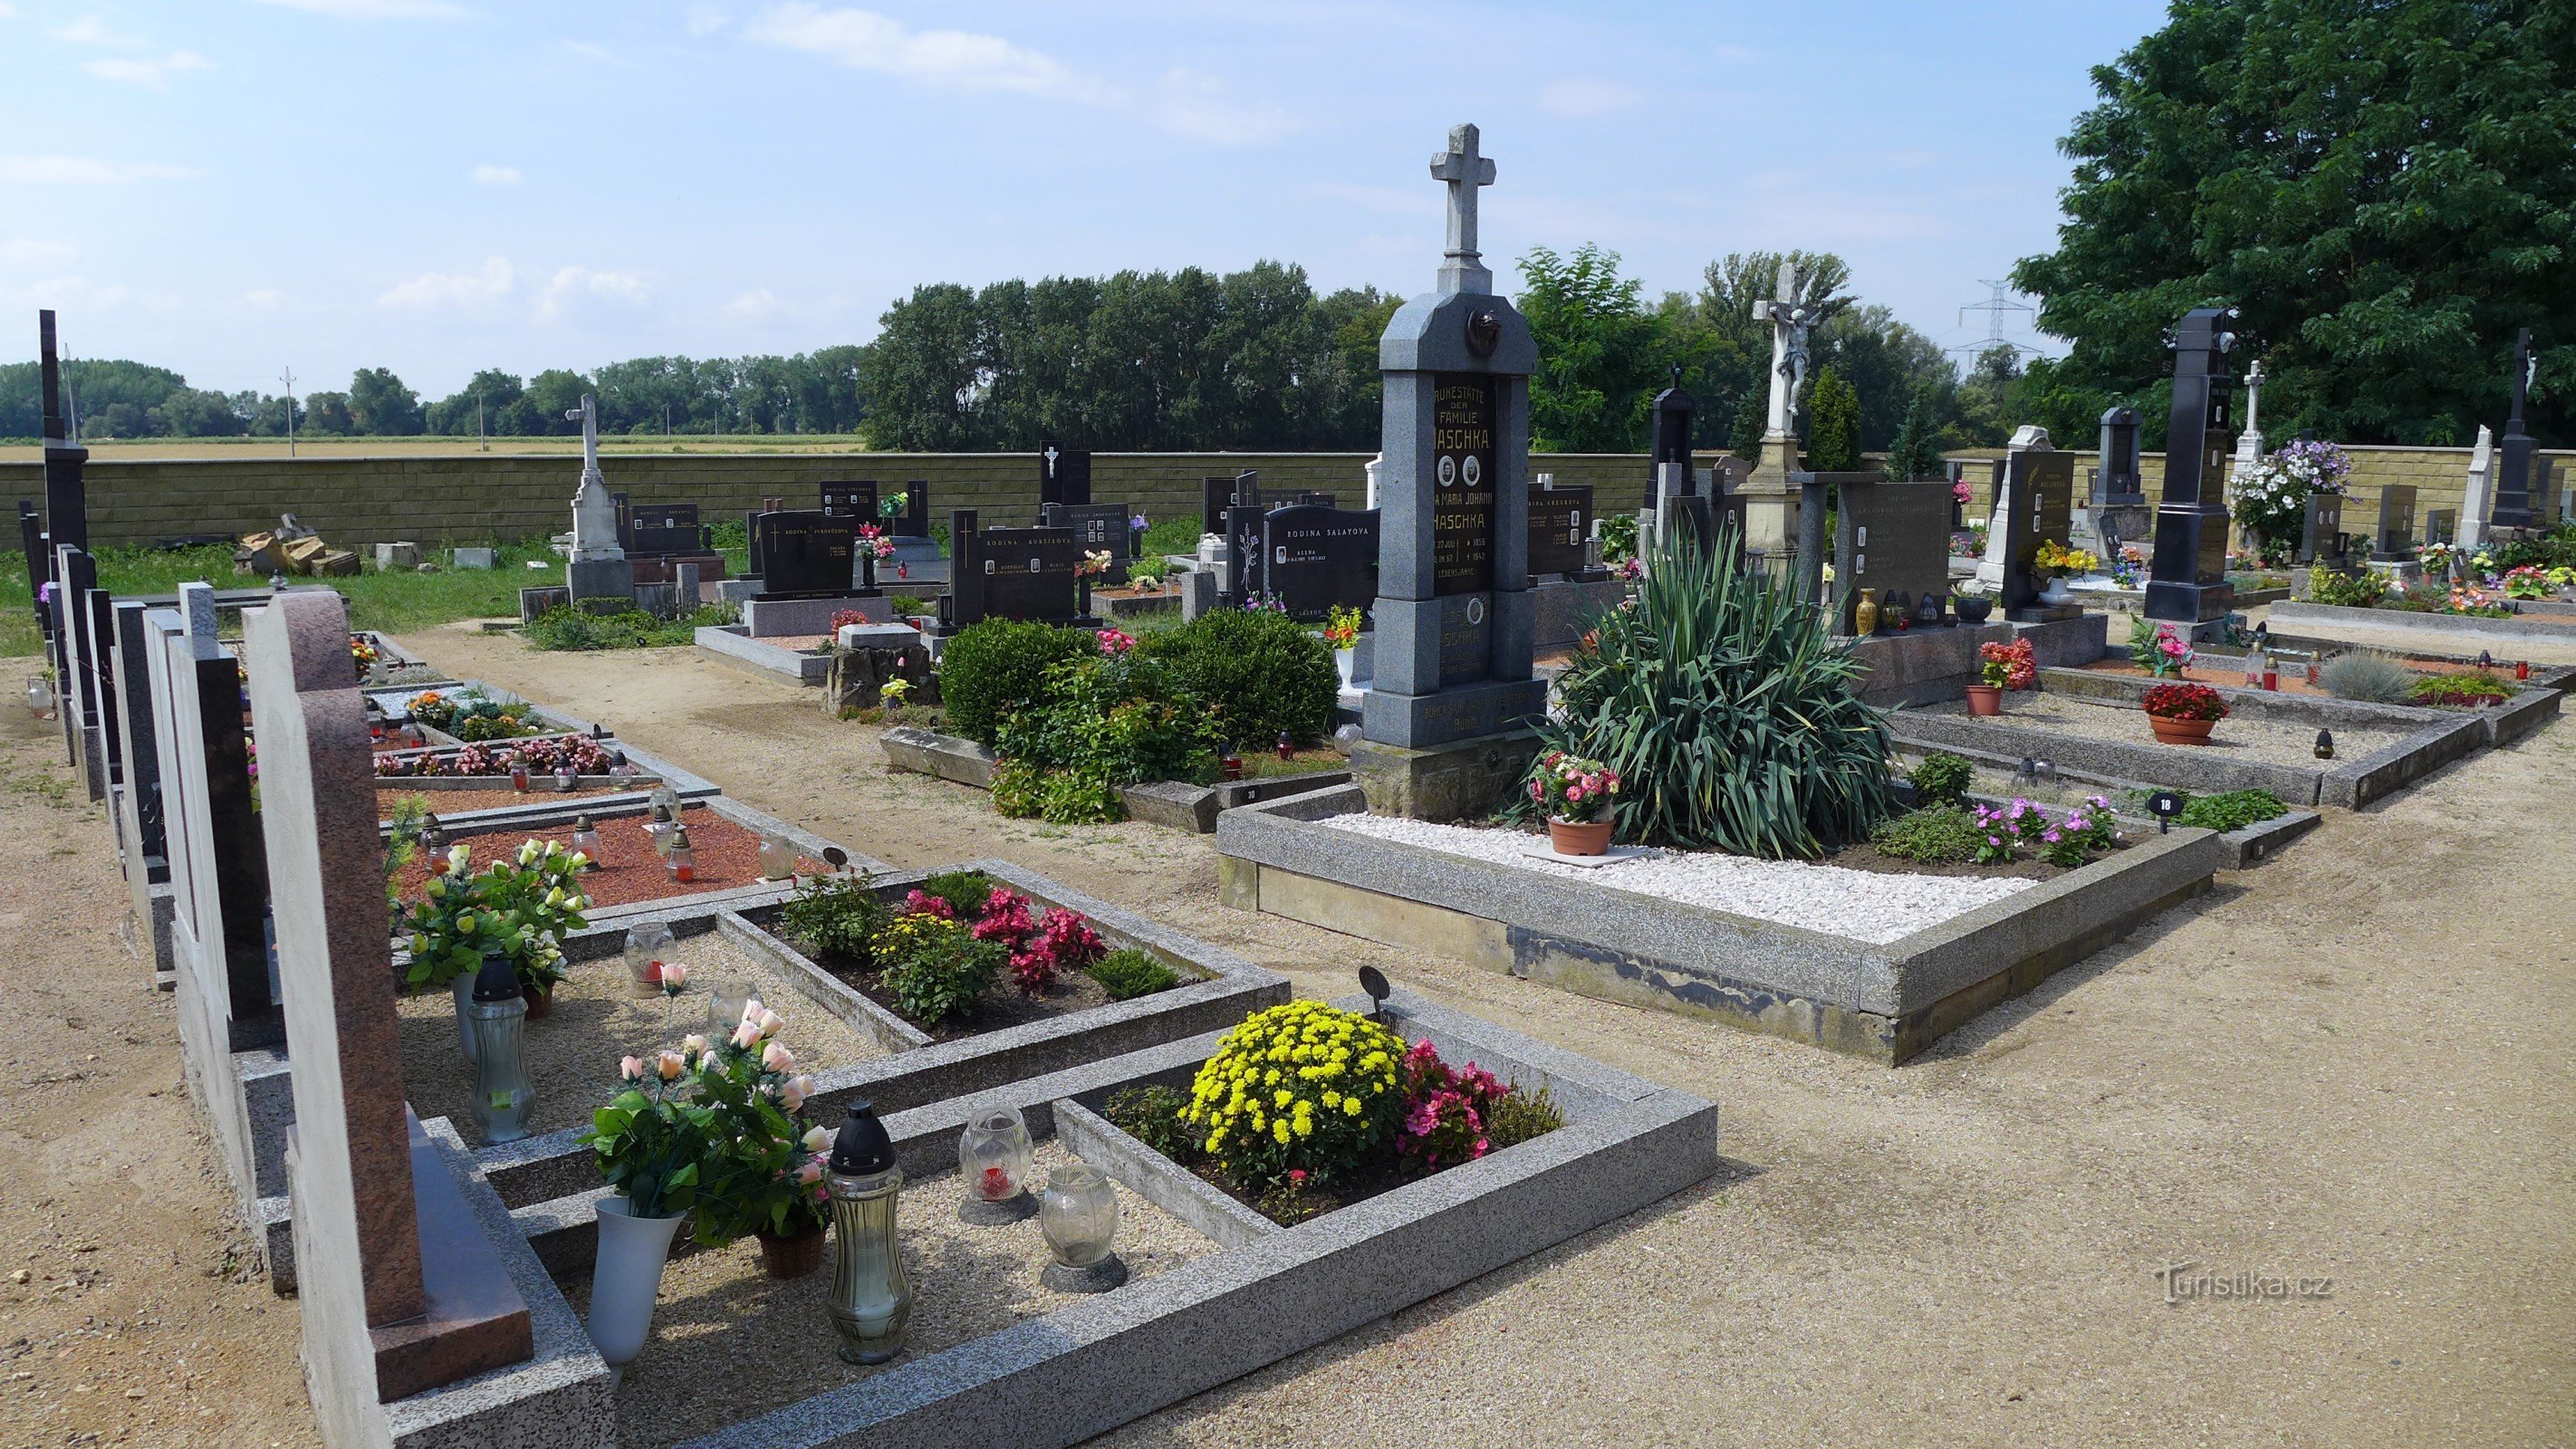 Nemčičky - kirkegård